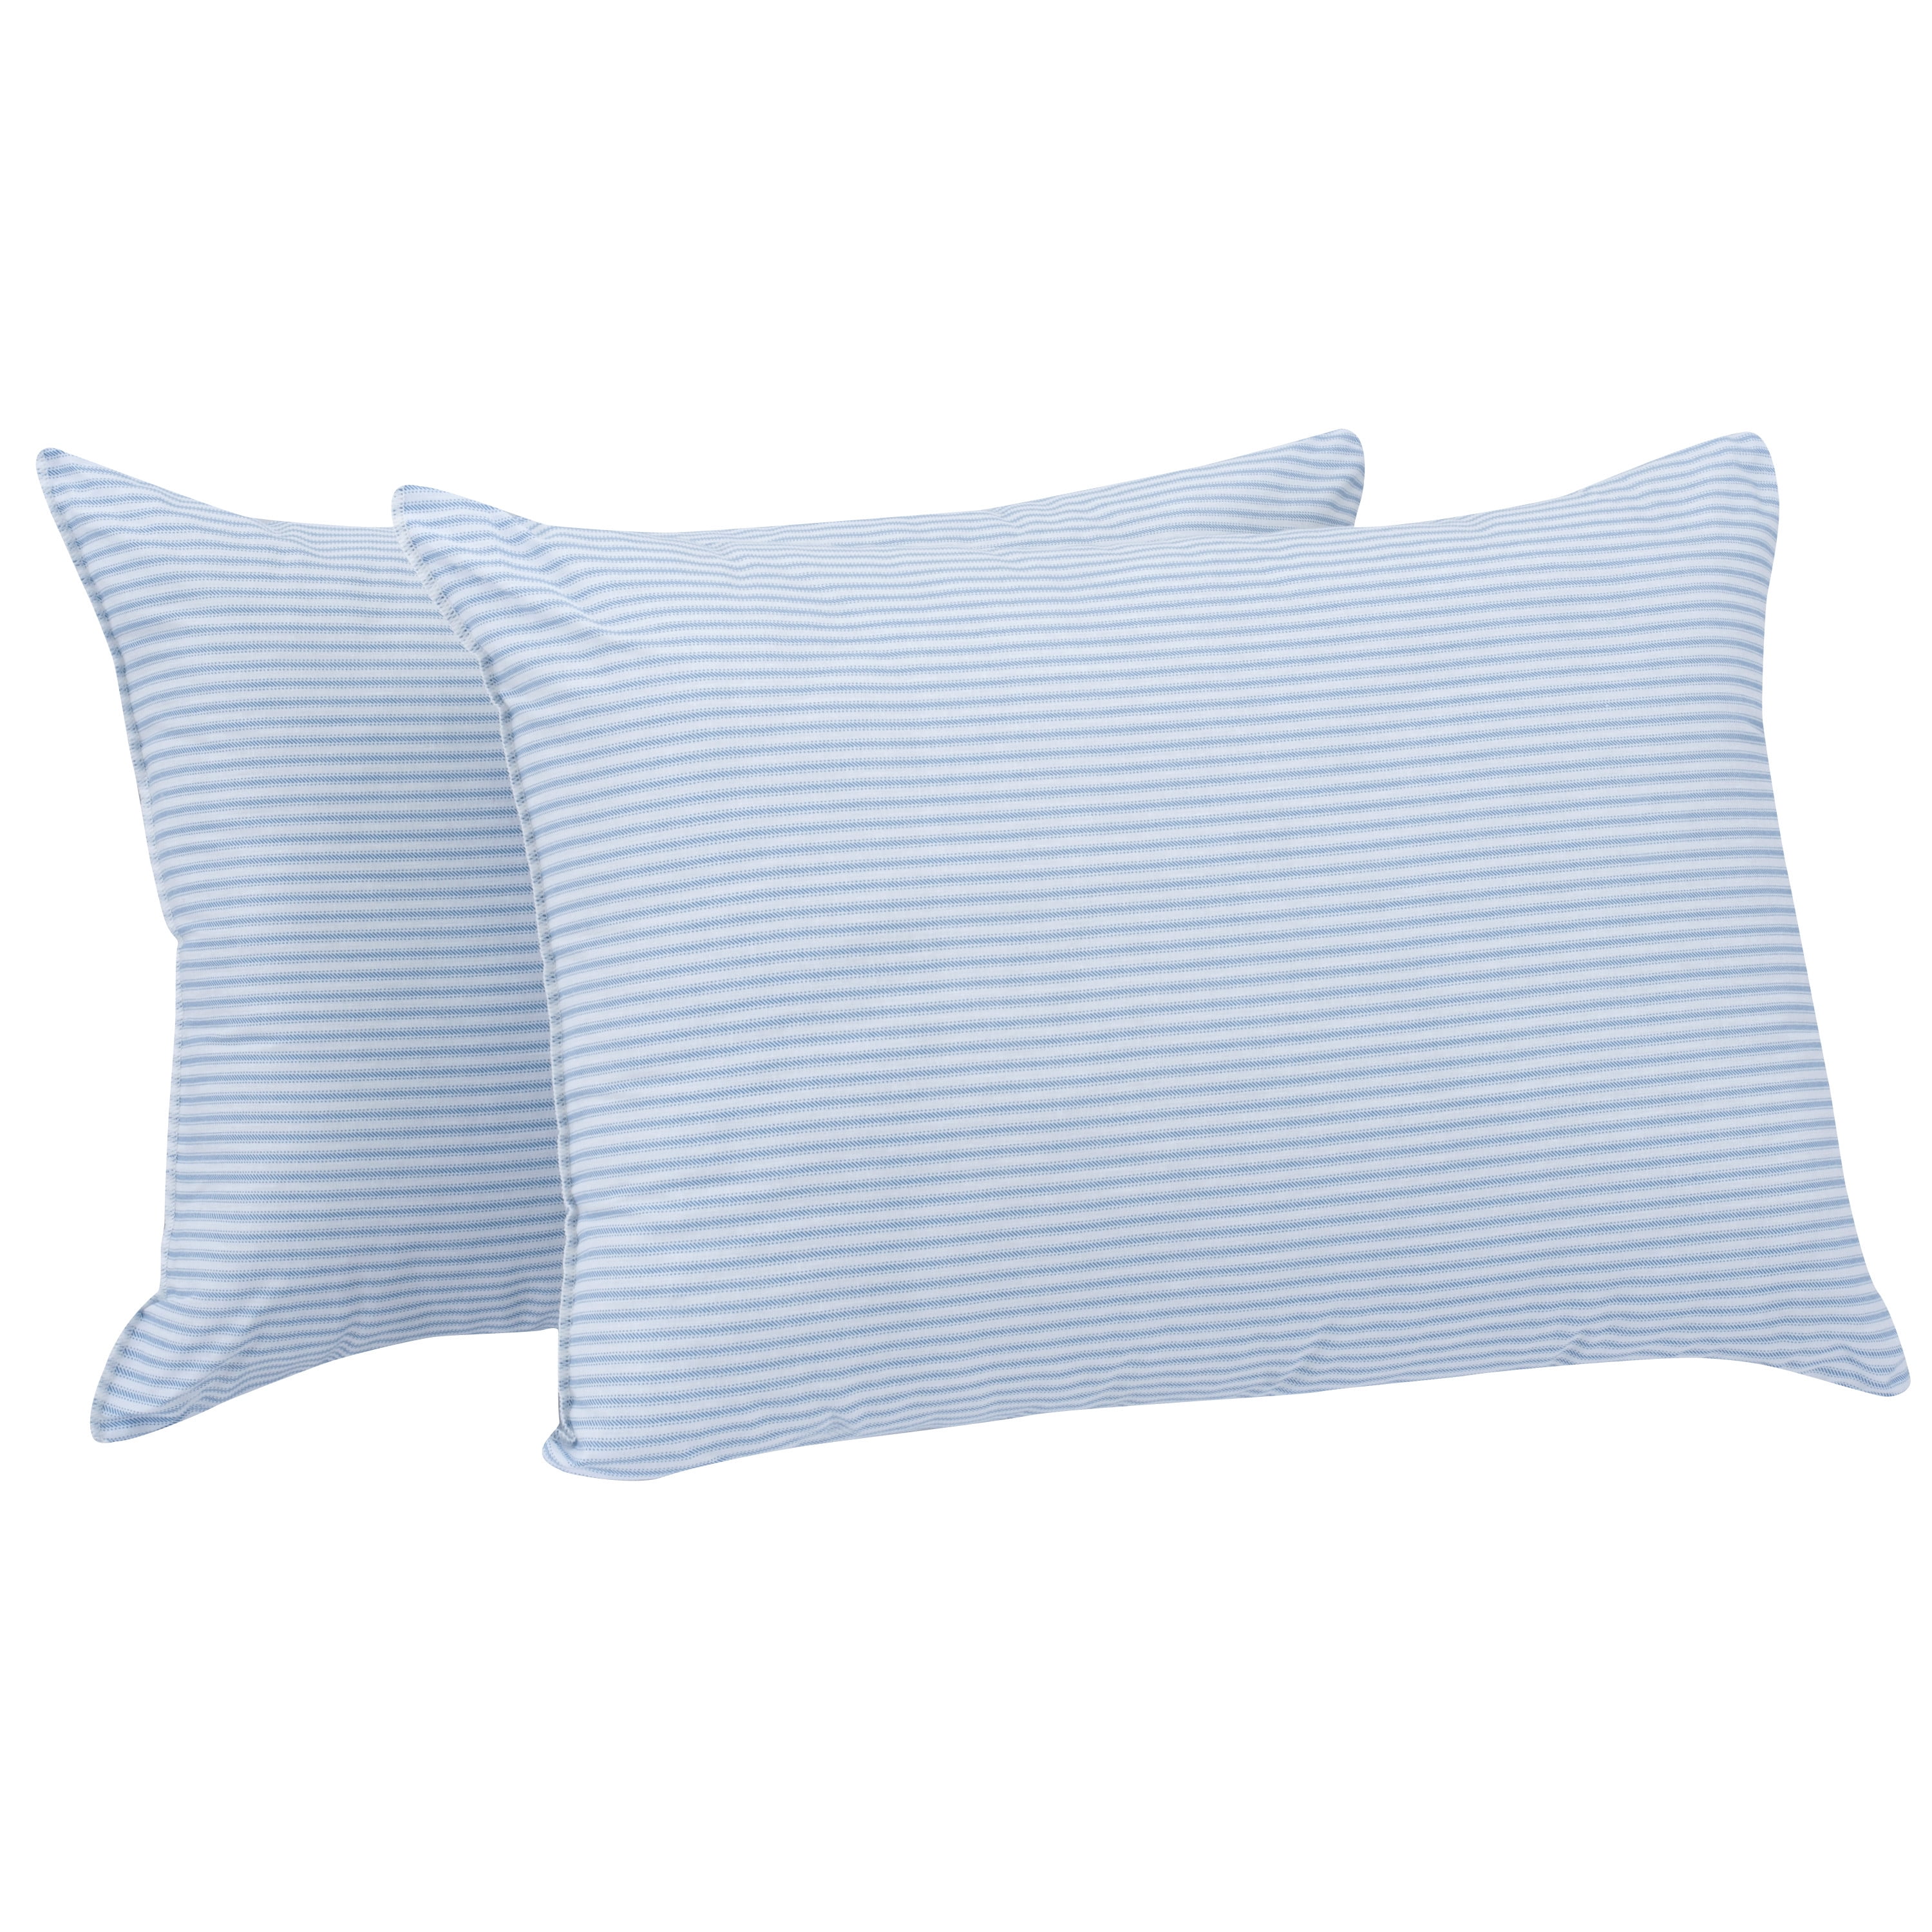 Mainstays Comfort Complete Standard/Queen Size Pillow 